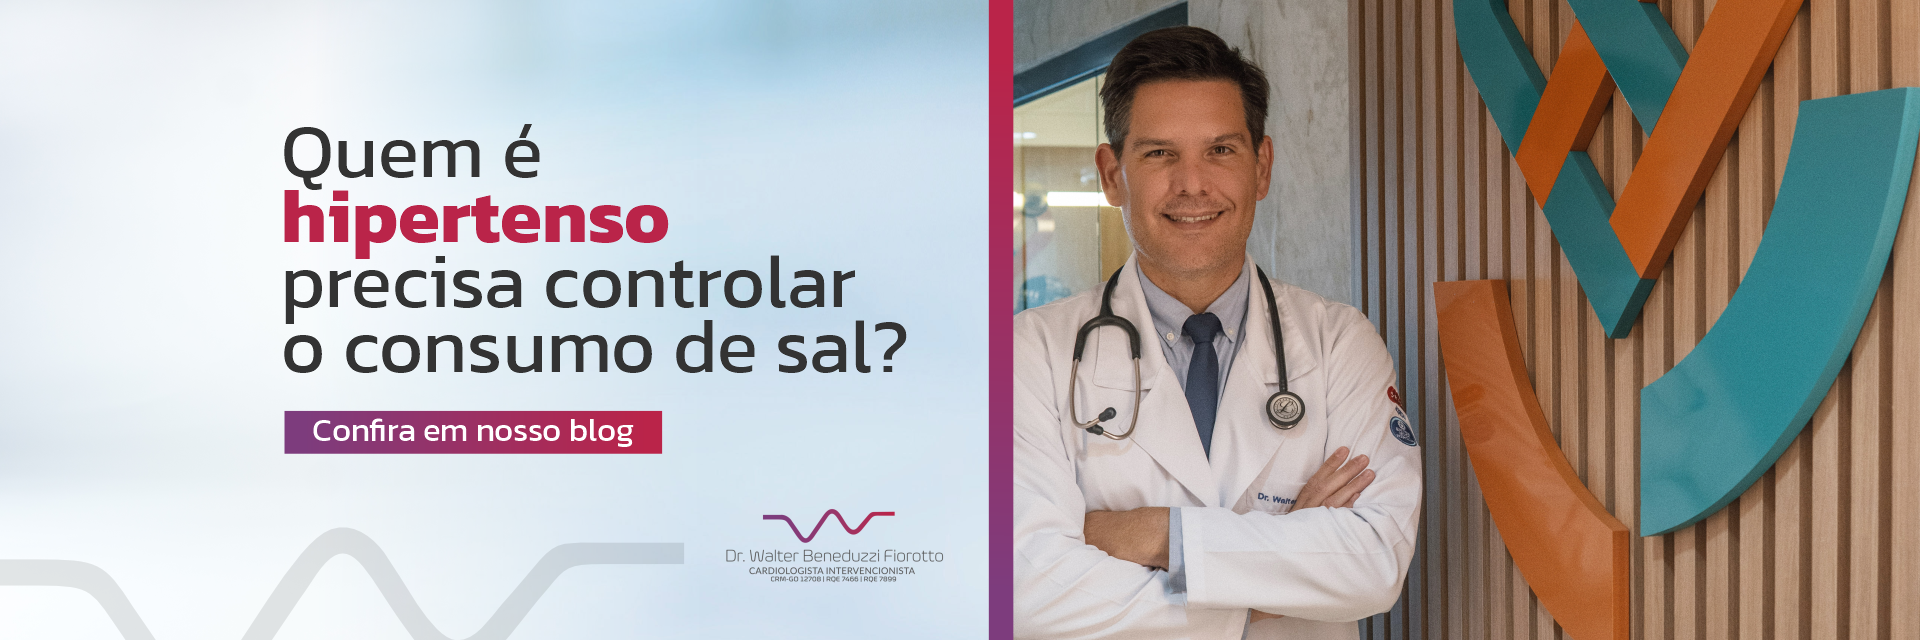 Imagem do slide: Quem é hipertenso precisa controlar o uso de sal? - 